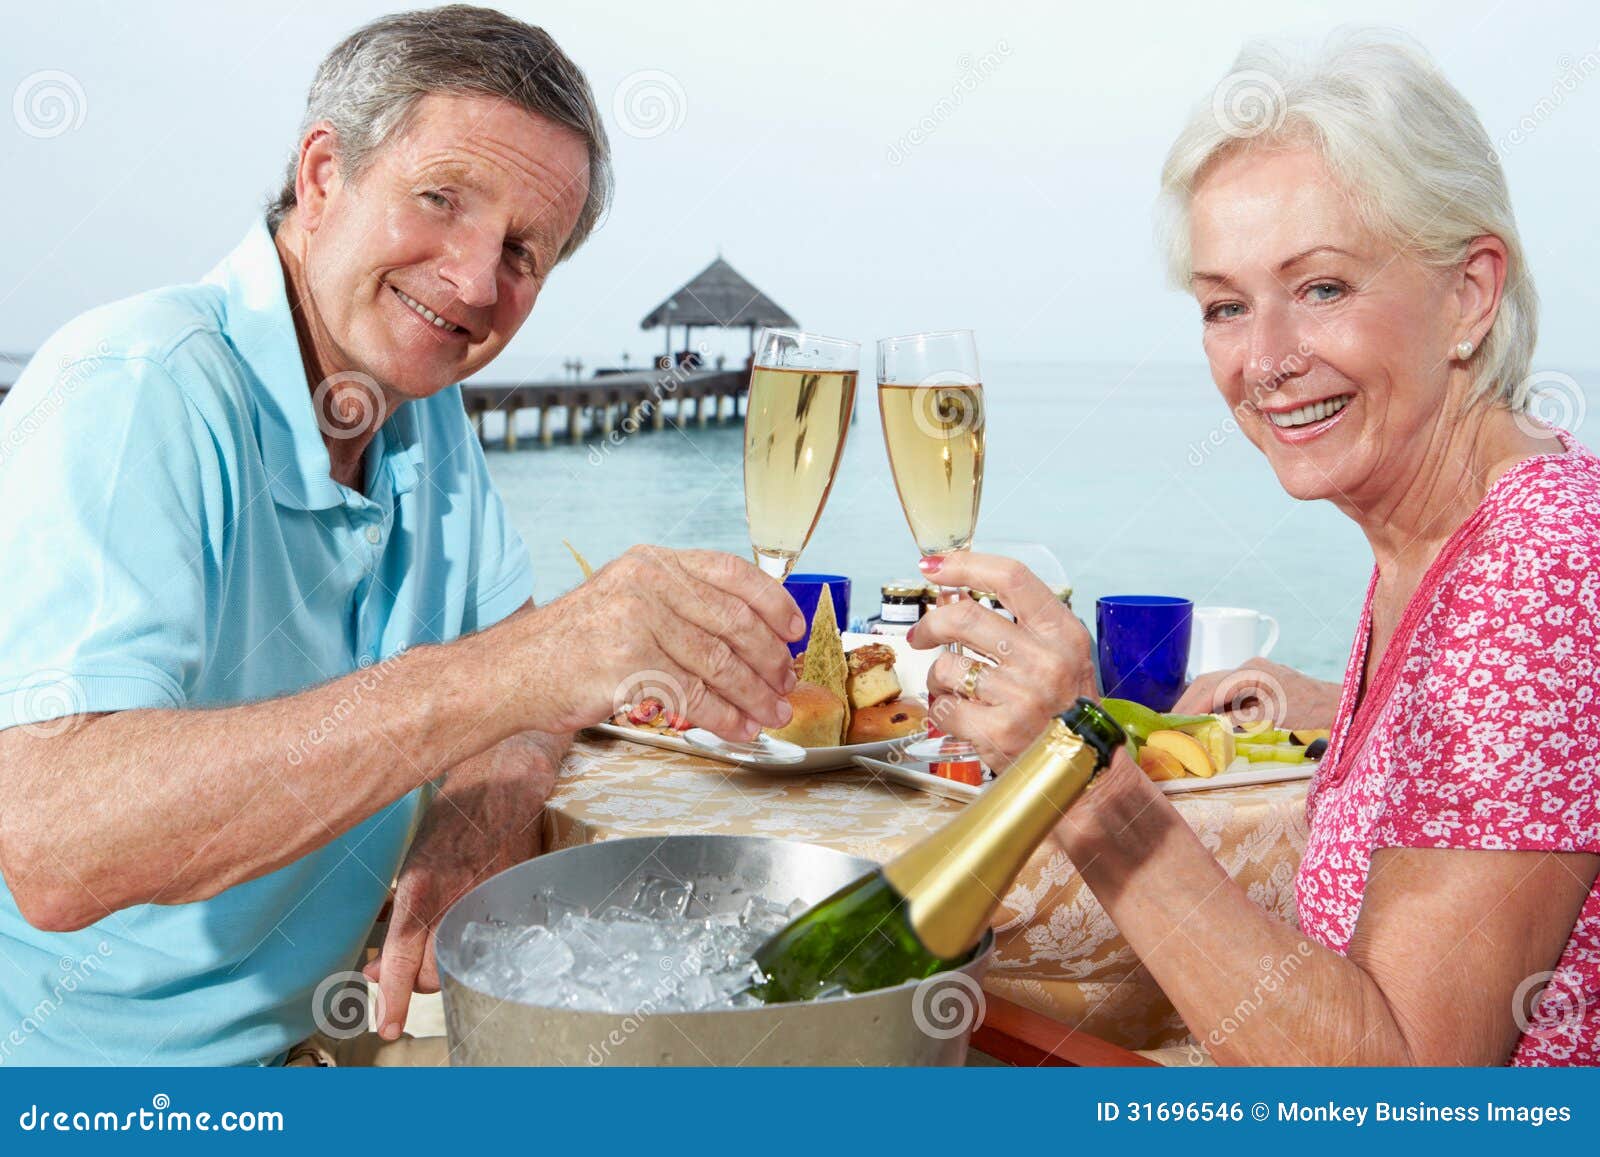 senior couple enjoying meal in seafront restaurant